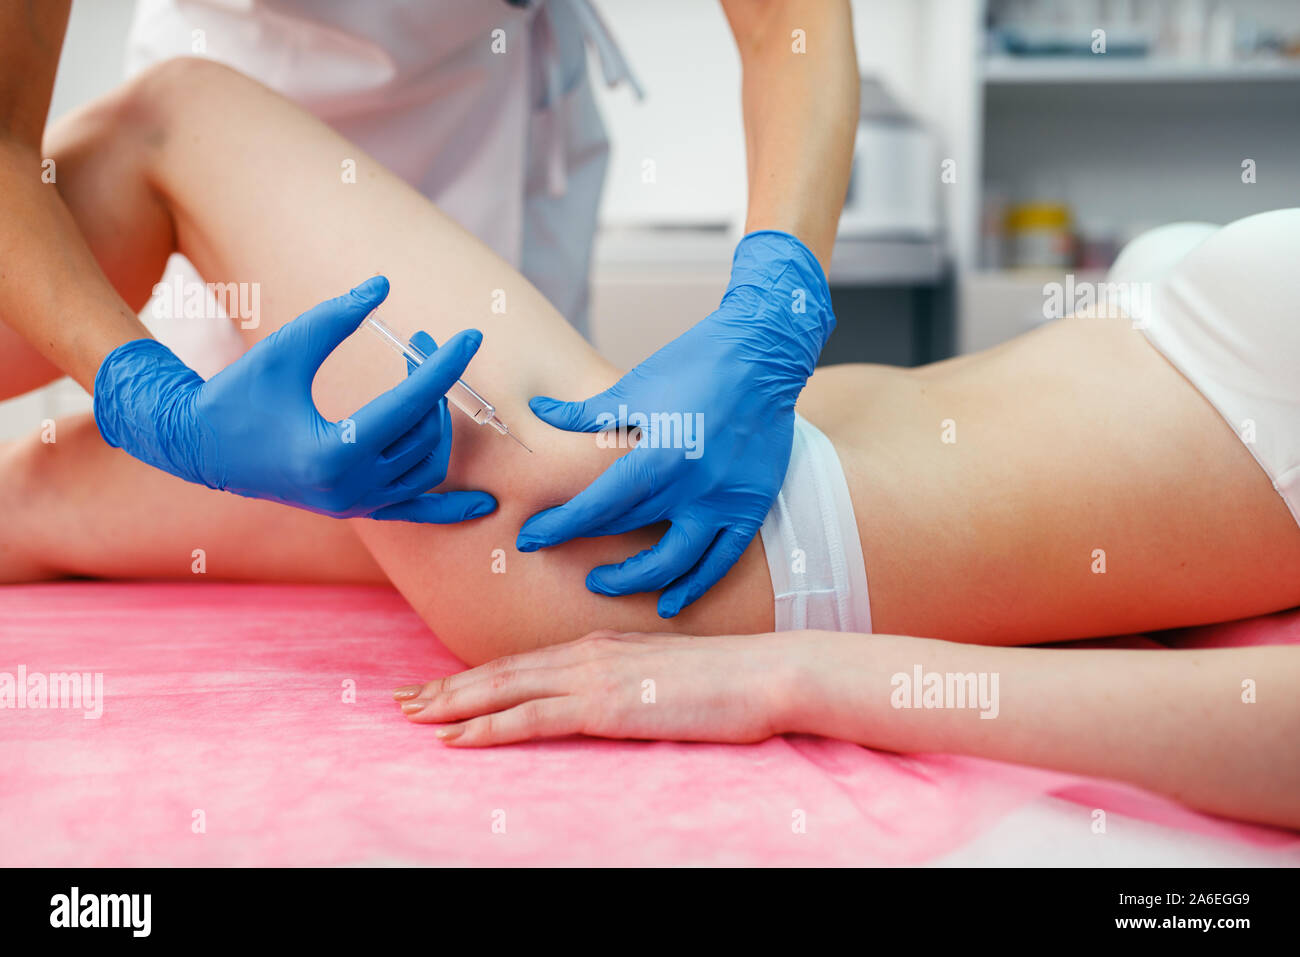 Cosmetician donne botox injection dans la cuisse Banque D'Images